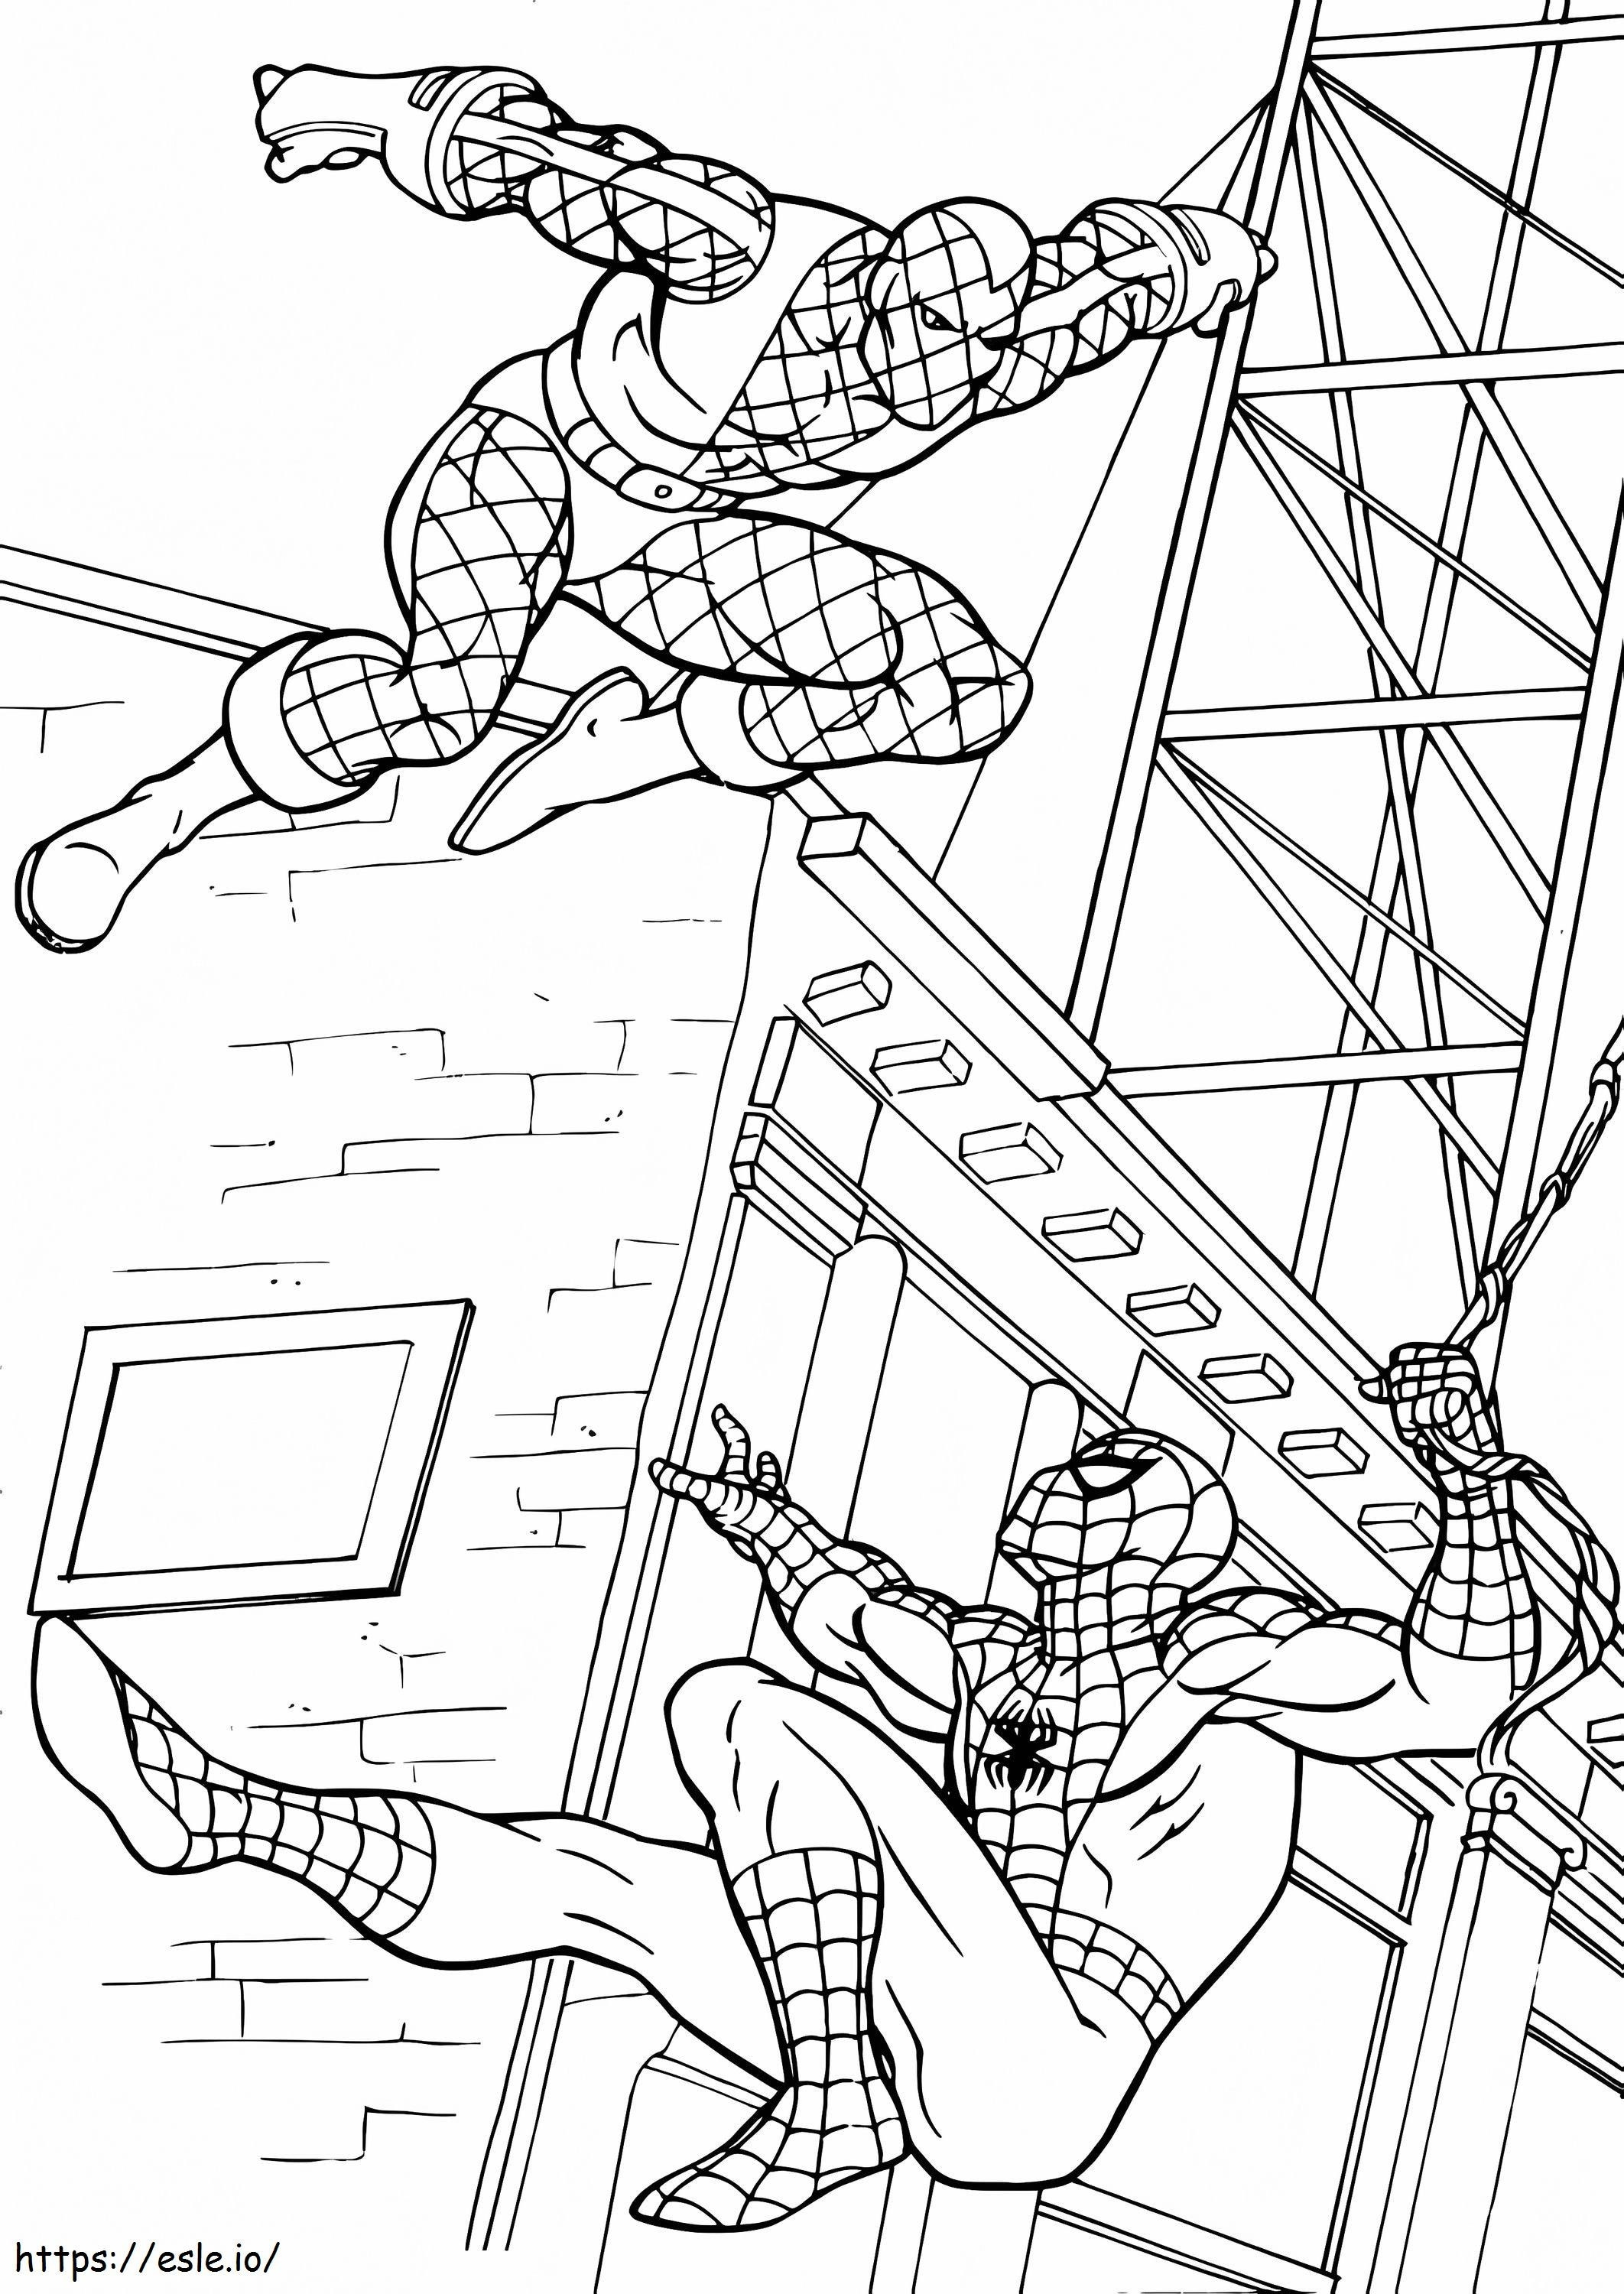 Spiderman gegen Bösewicht ausmalbilder